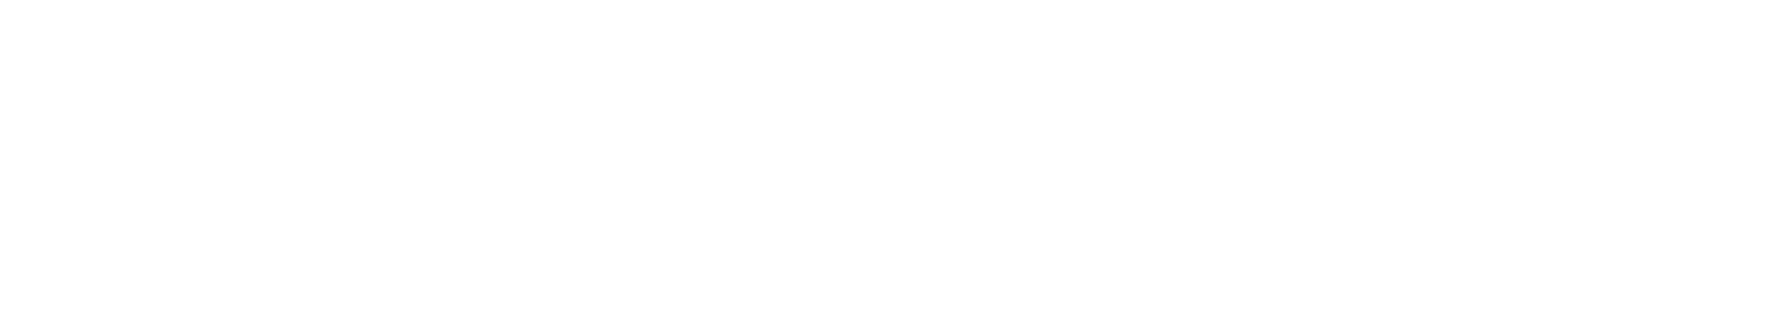 BXR logo no R wk